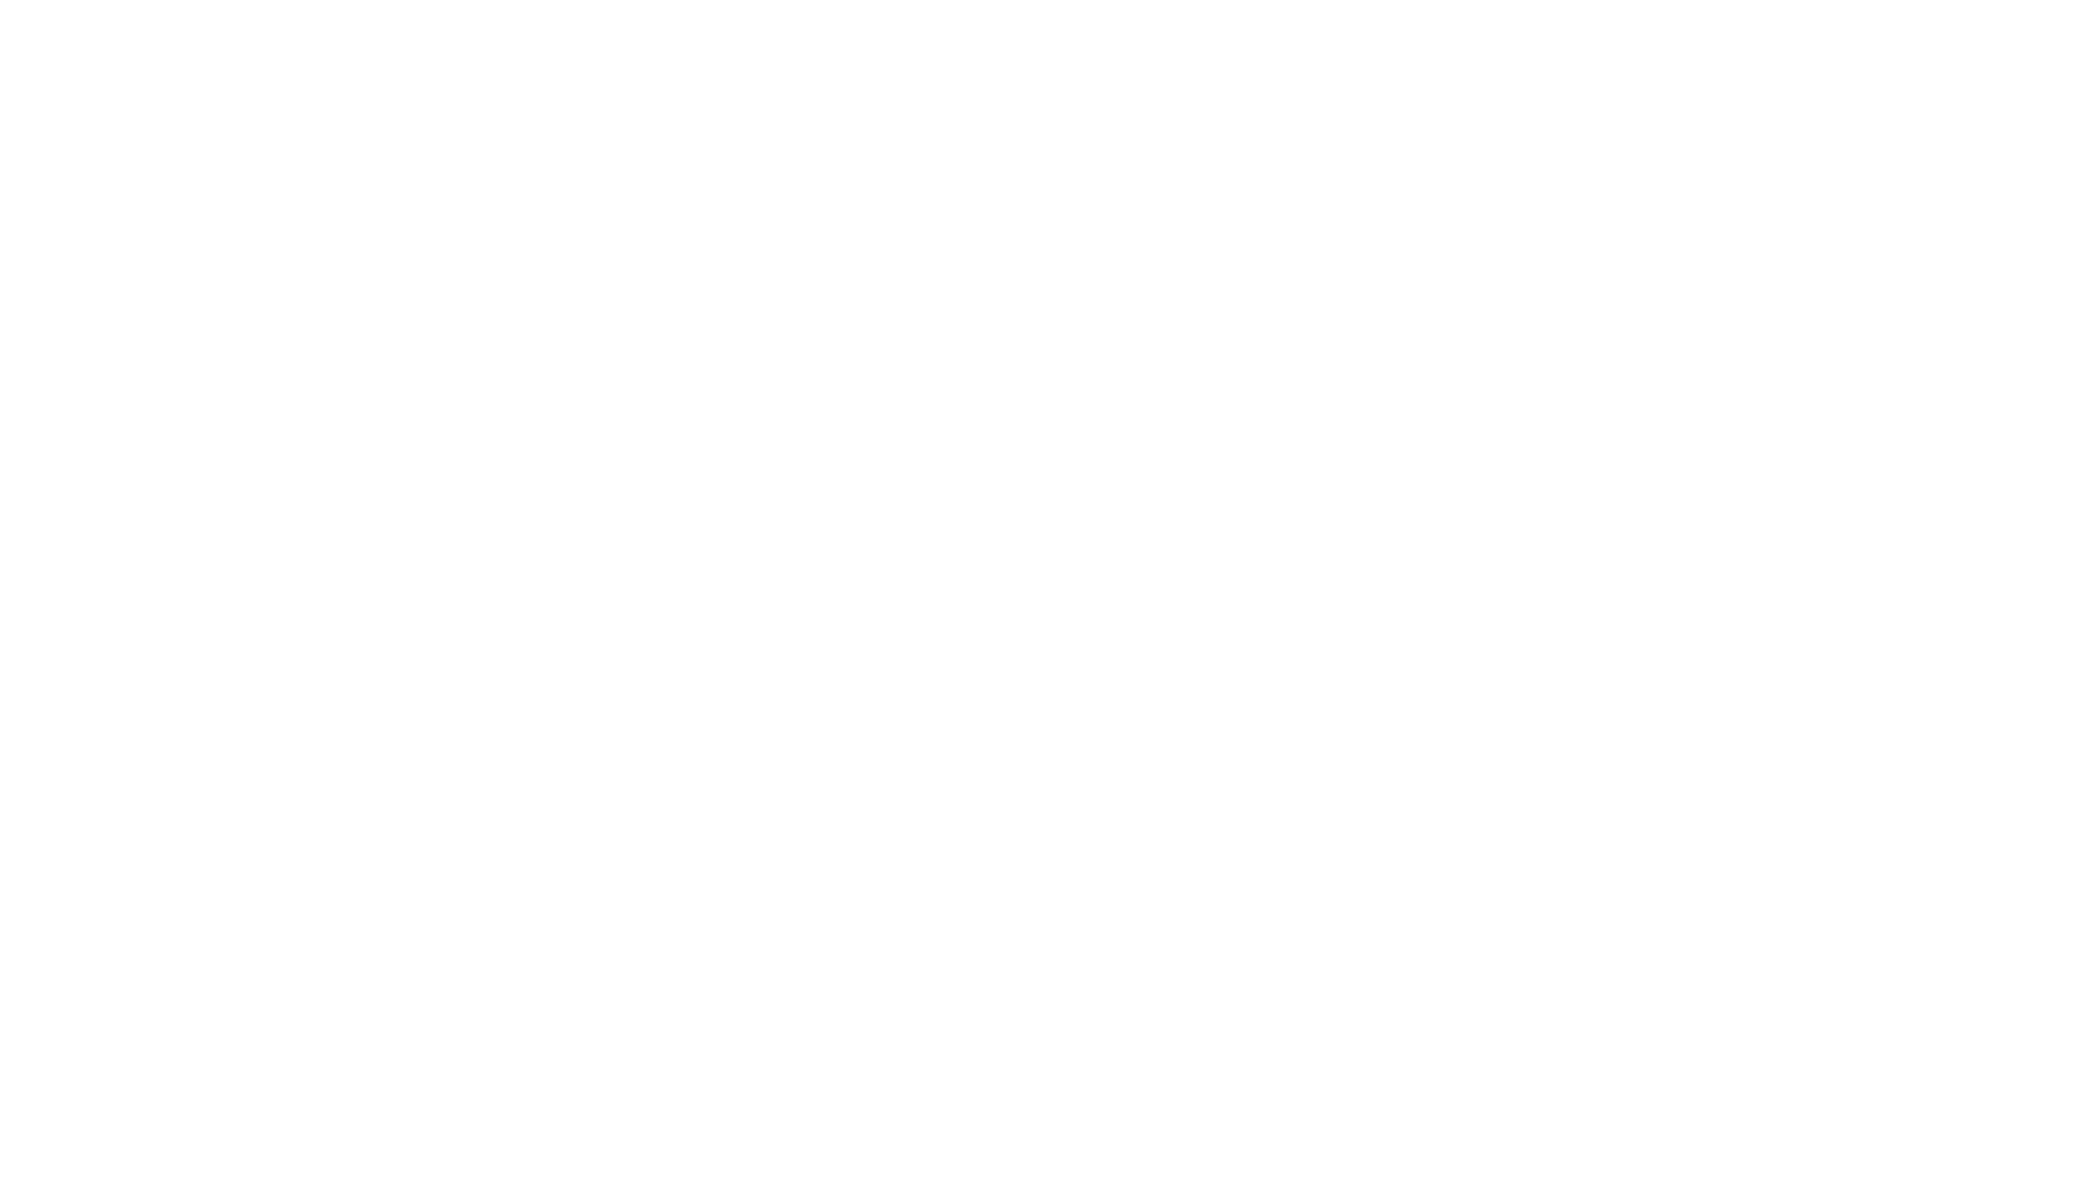 Intro to Type